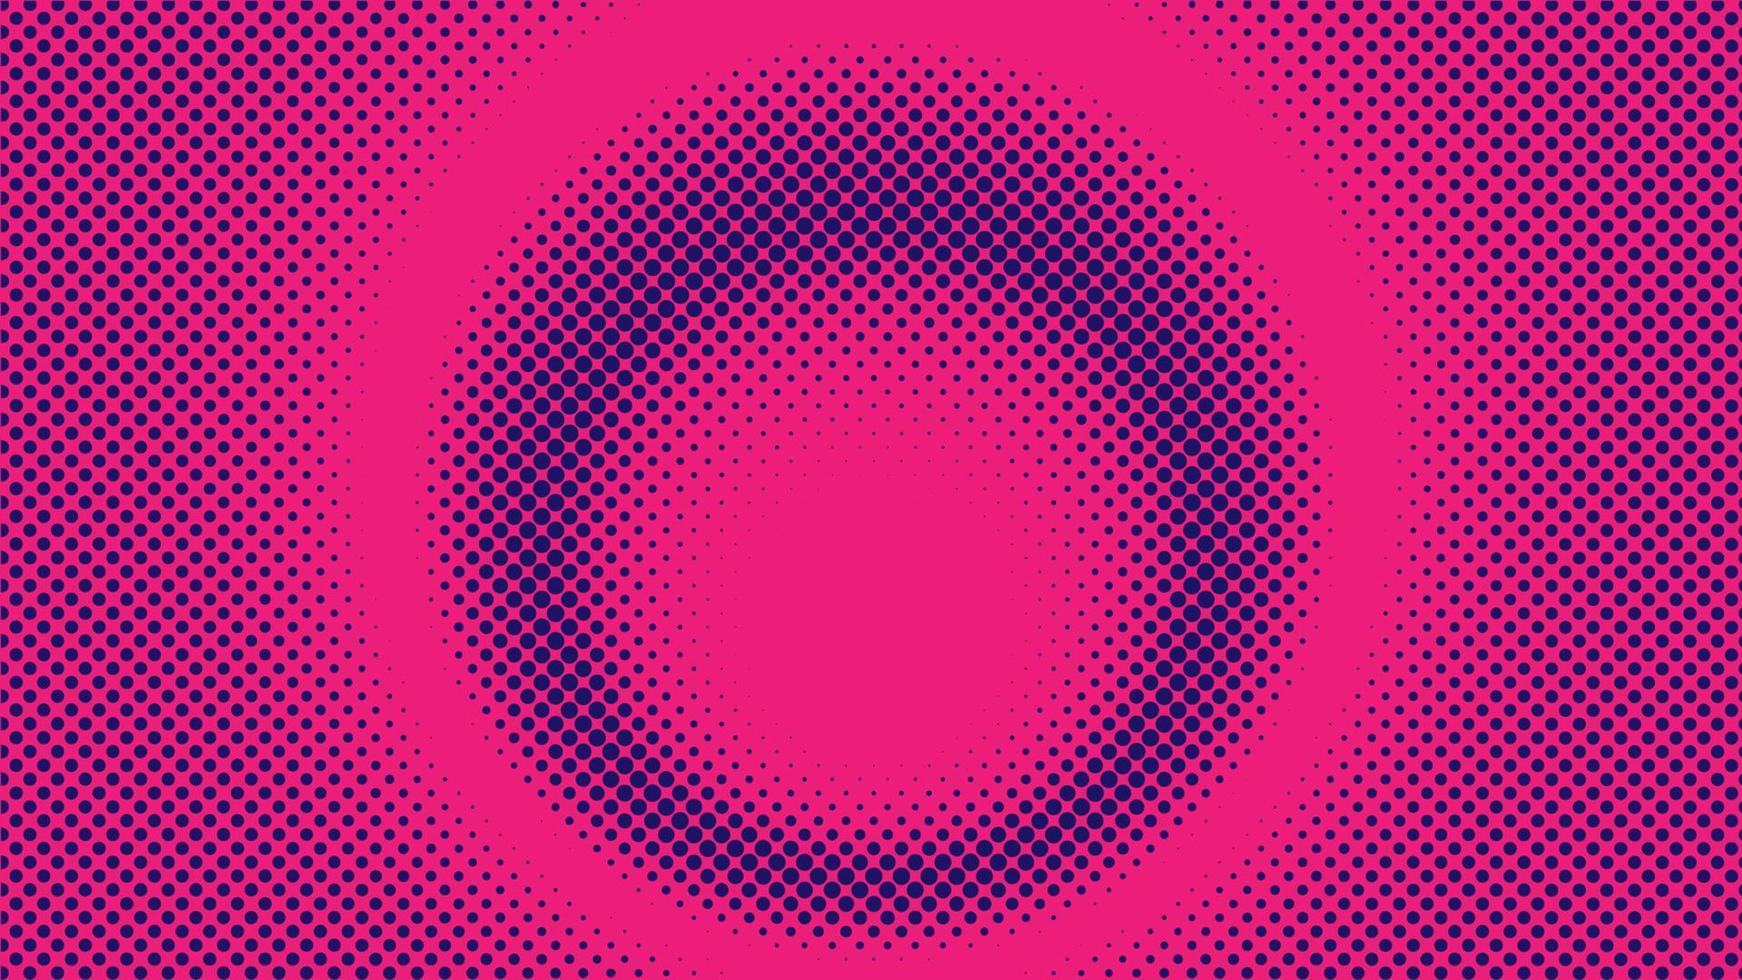 färgglad radiell halvtonsbakgrundsdesignmall, popkonst, abstrakt prickmönsterillustration, modernt texturelement, ringhalvtonsprydnad, rosa magenta violett lila nyanseringstapet vektor